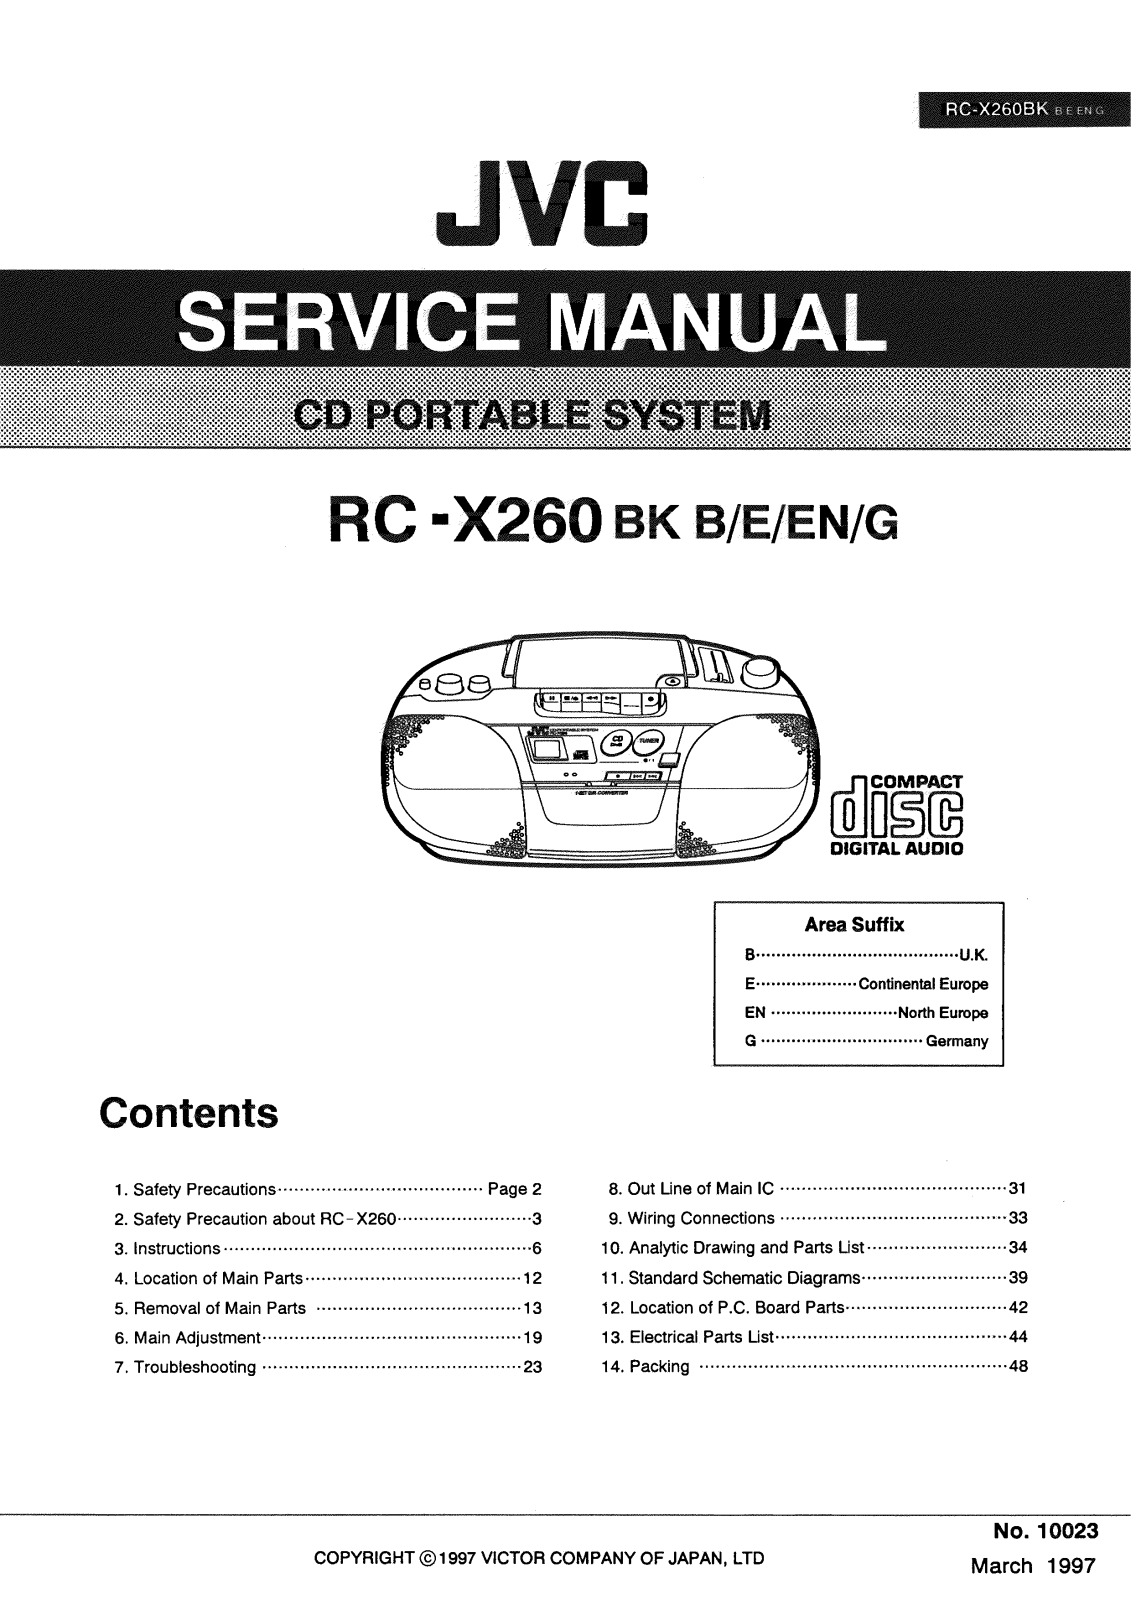 JVC RC-X260BK Service Manual